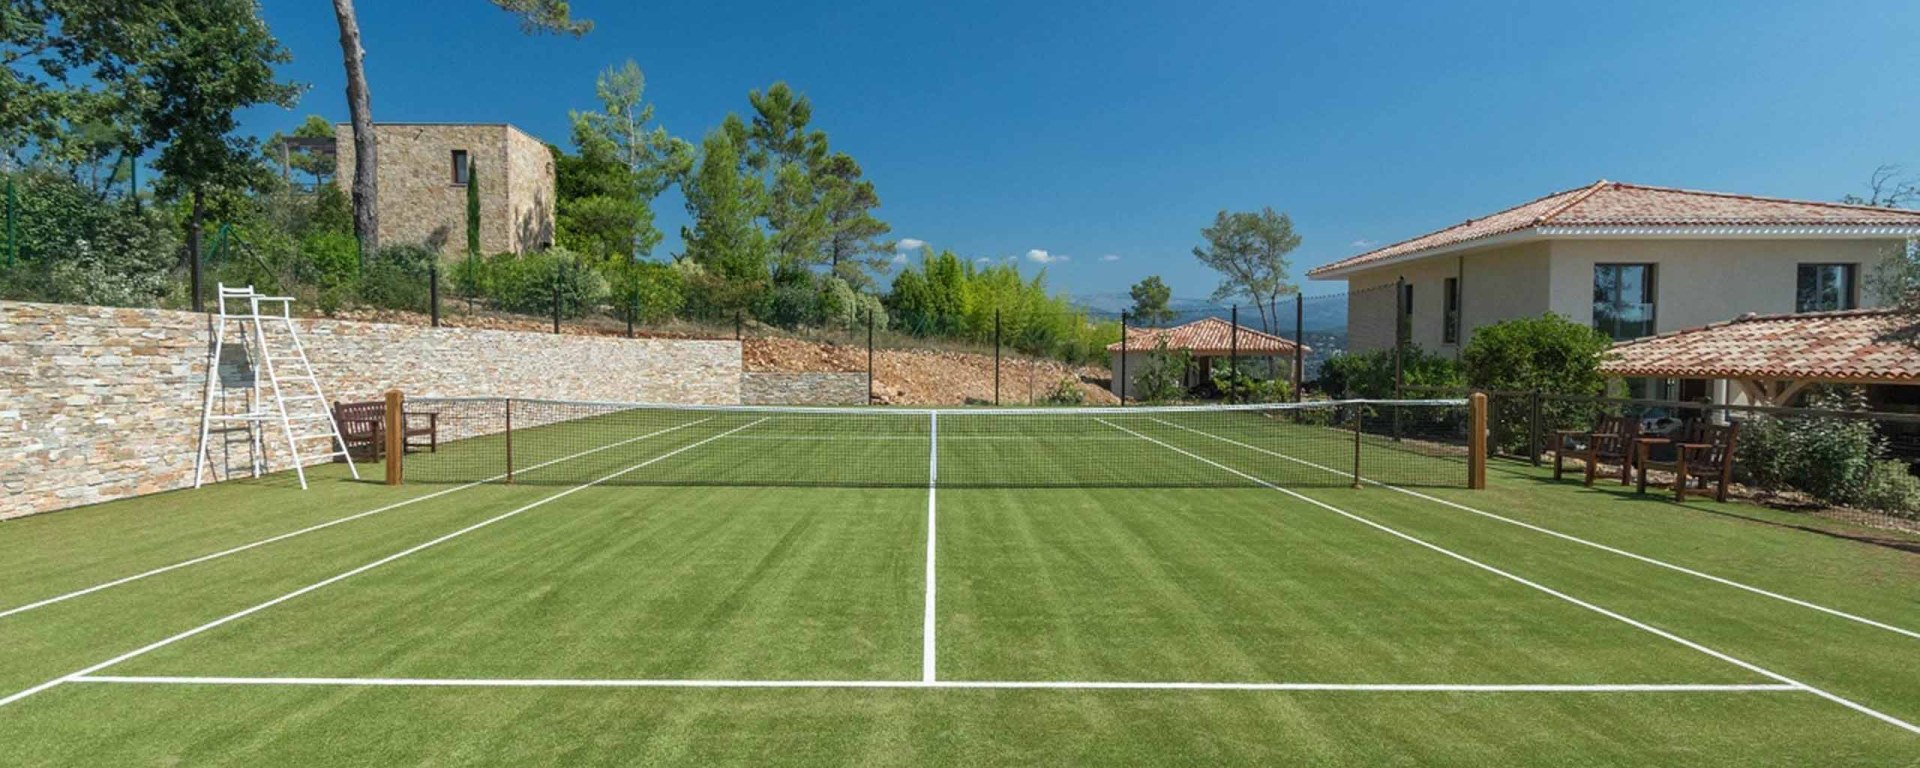 Luxus Ferienhaus Südfrankreich mit Tennisplatz mieten